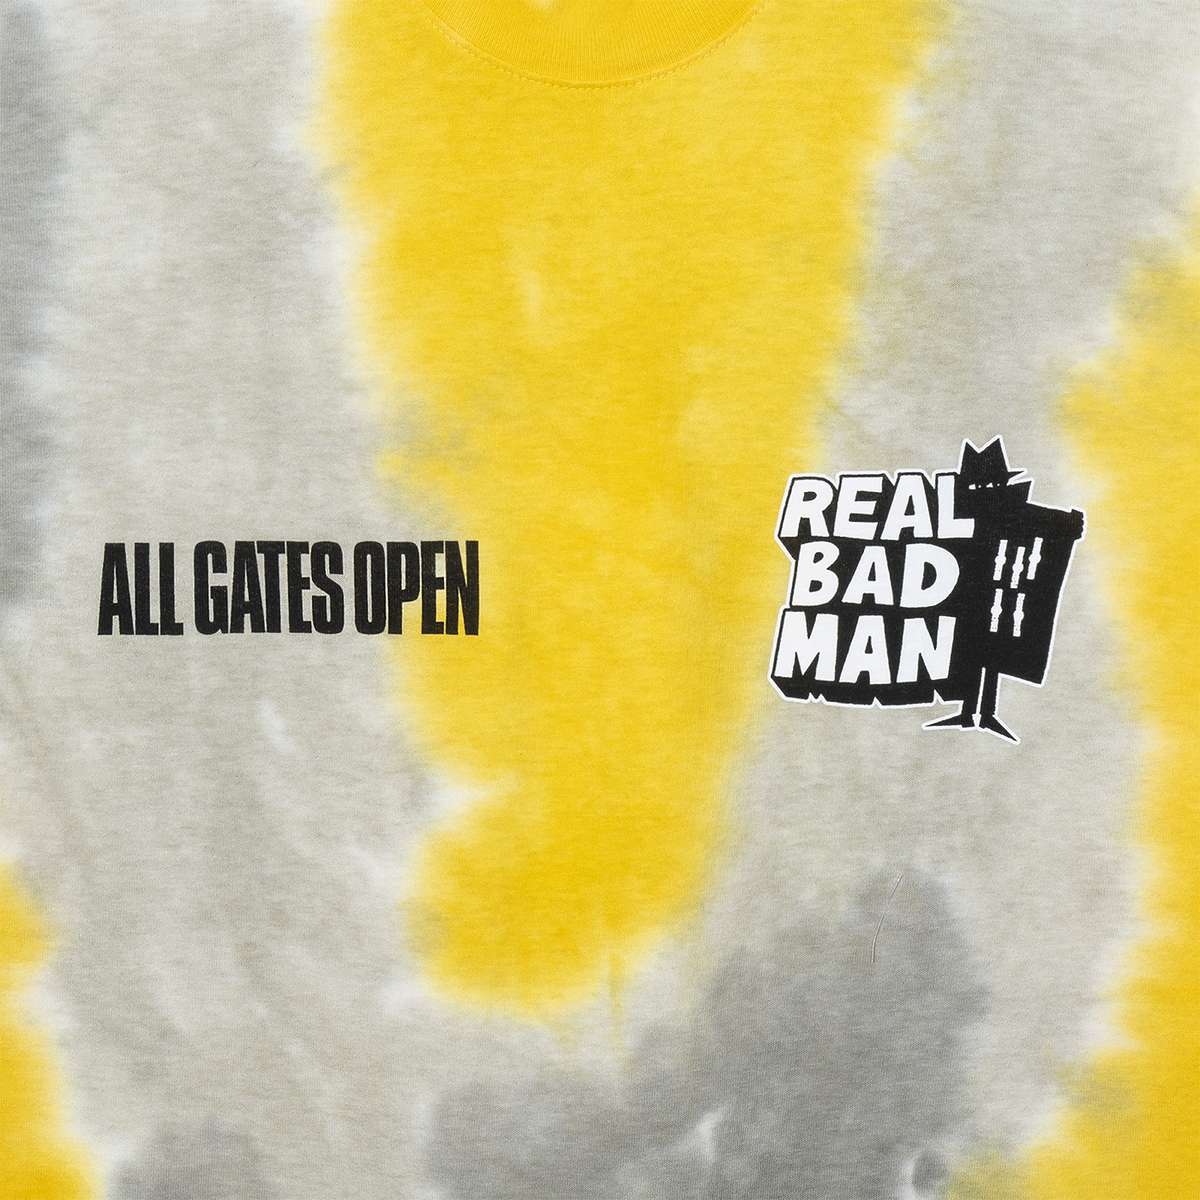 All Gates Open T-Shirt